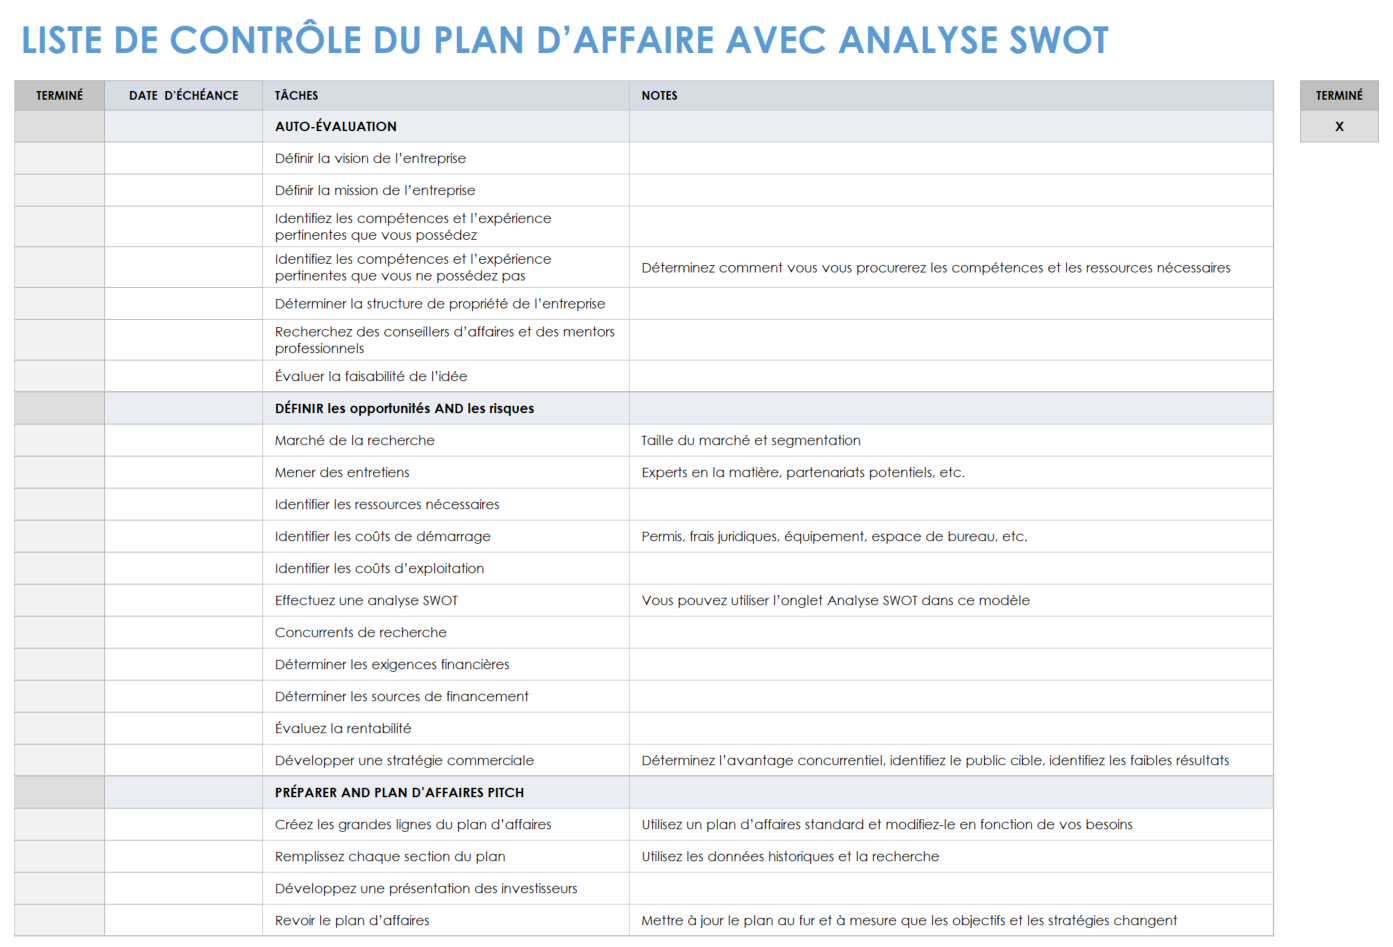 Liste de contrôle de planification d'entreprise avec analyse SWOT